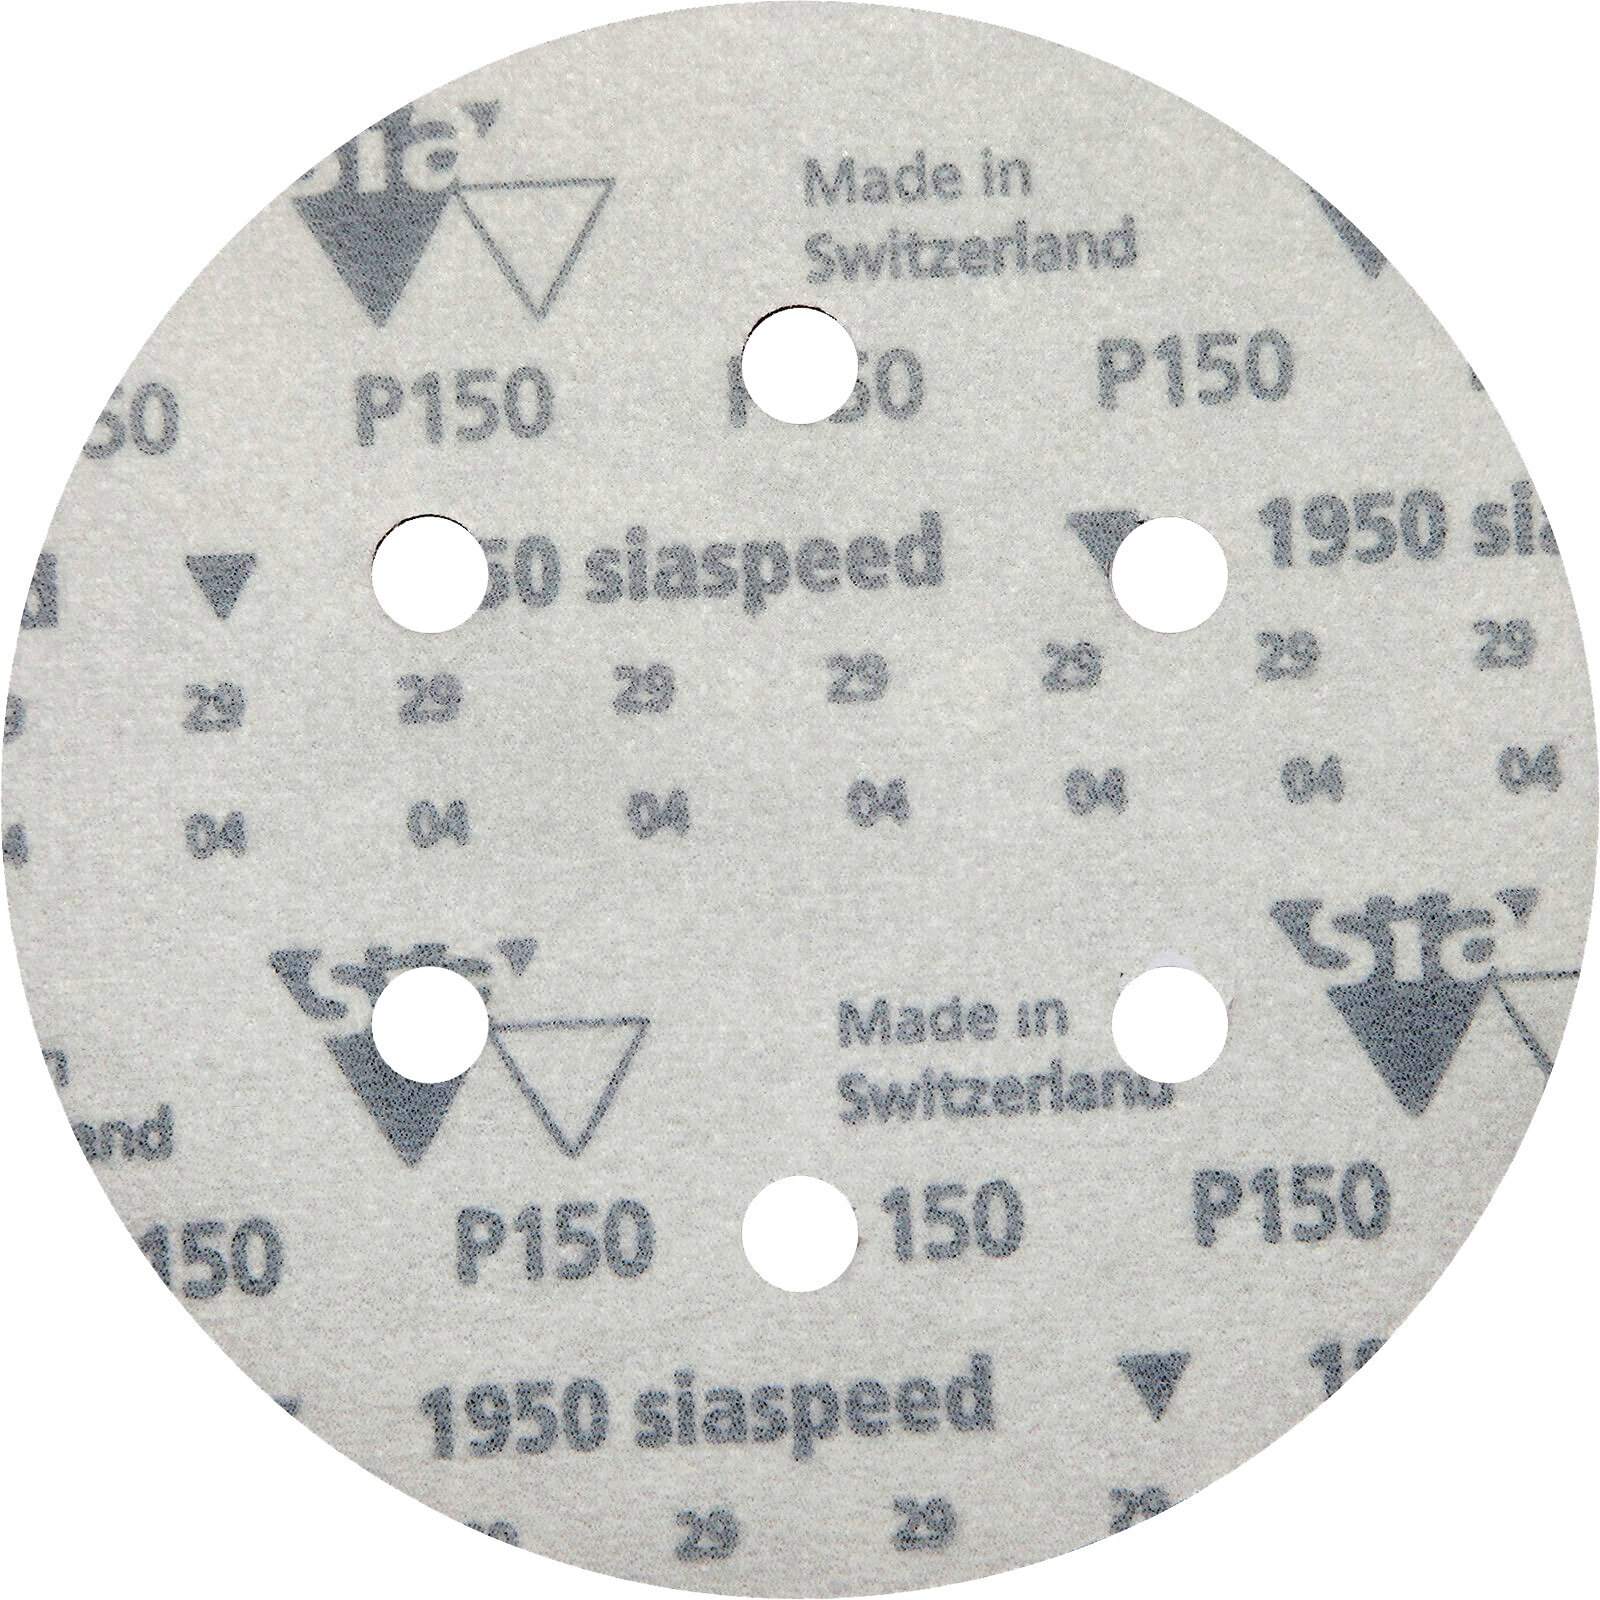 Круг шлифовальный на липучке "siaspeed 1950" - 6 шт, D 150 мм, 6 отверстий, Р 150, водостойкая наждачная бумага, наждачный круг, наждачка, шкурка - фотография № 7